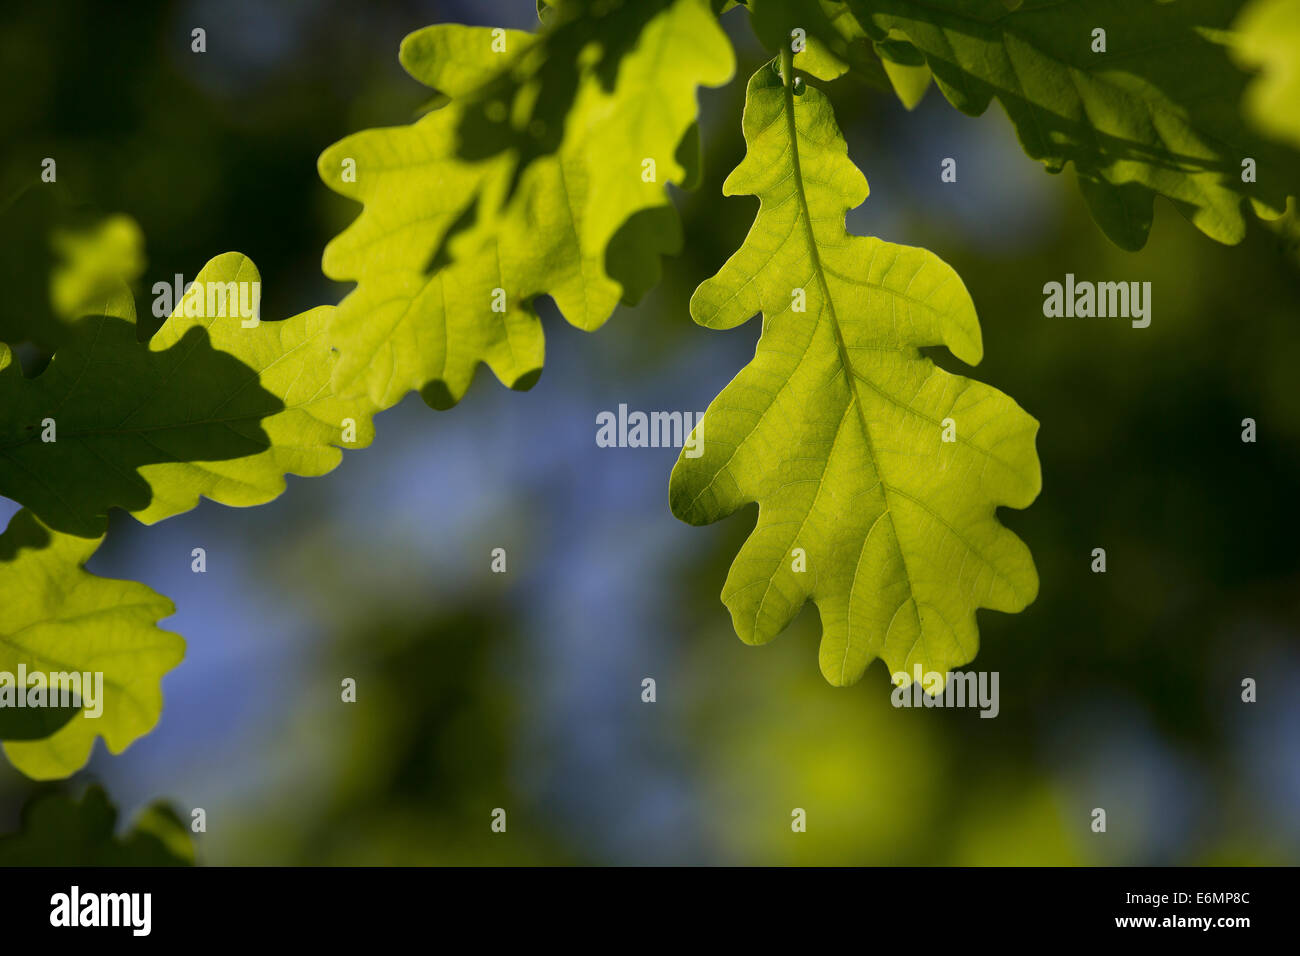 English Oak, oaks, leaf, leaves, Eichenlaub, Eichenblatt, Eichenblätter, Stiel-Eiche, Eichen, Stieleiche, Eiche, Quercus robur Stock Photo